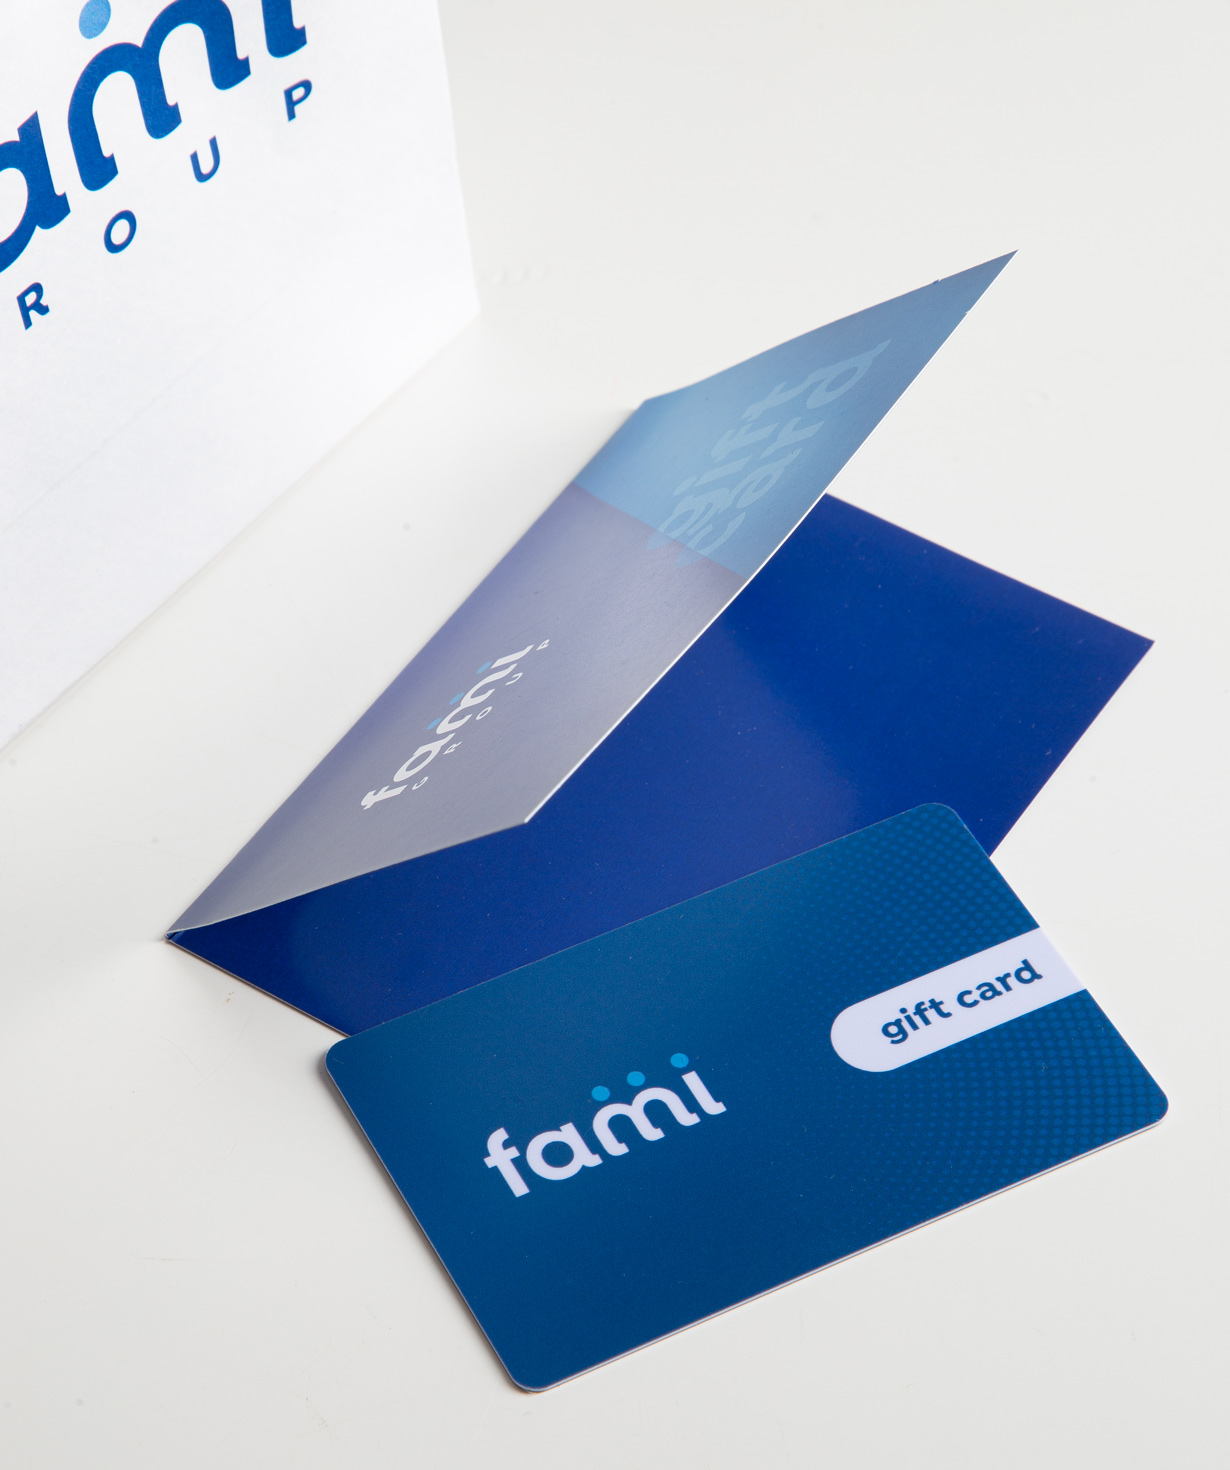 Նվեր-քարտ «Fami Group» 30.000 դրամ